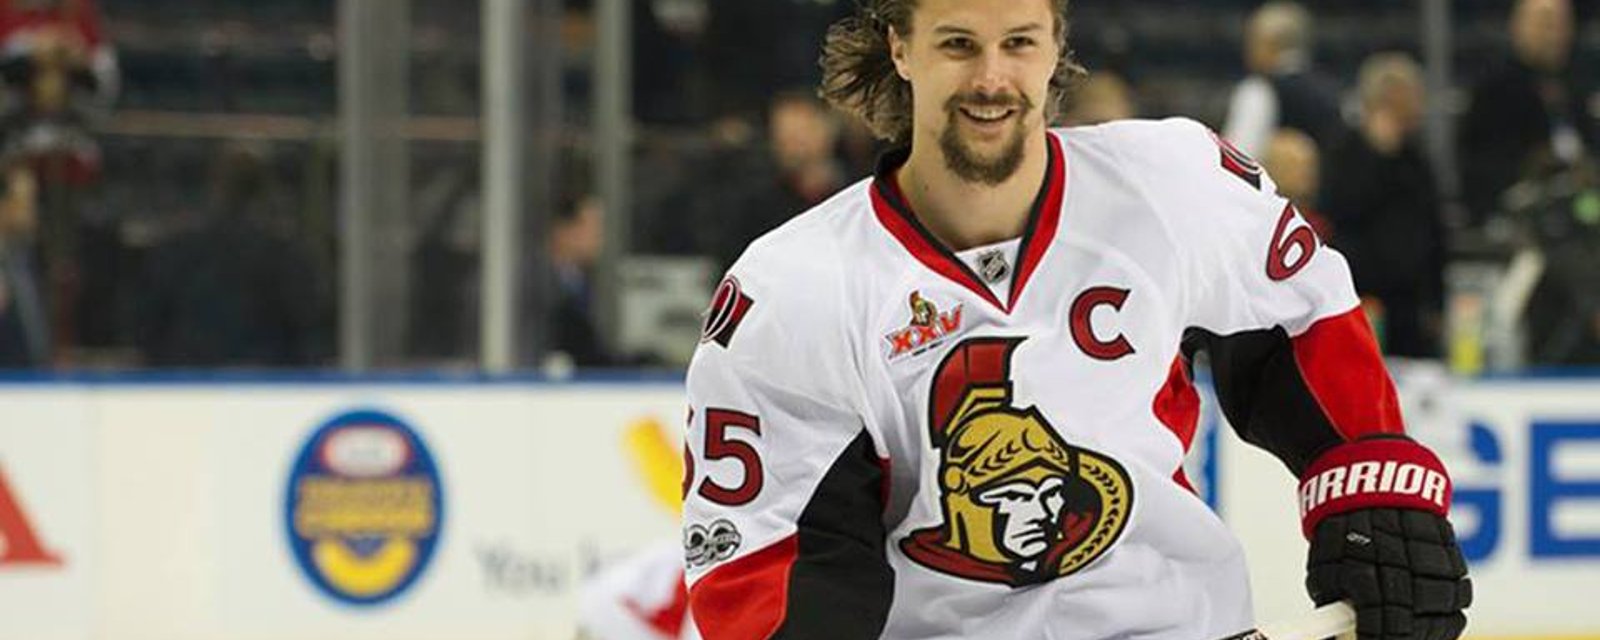 Breaking: Huge update on Karlsson's injury!